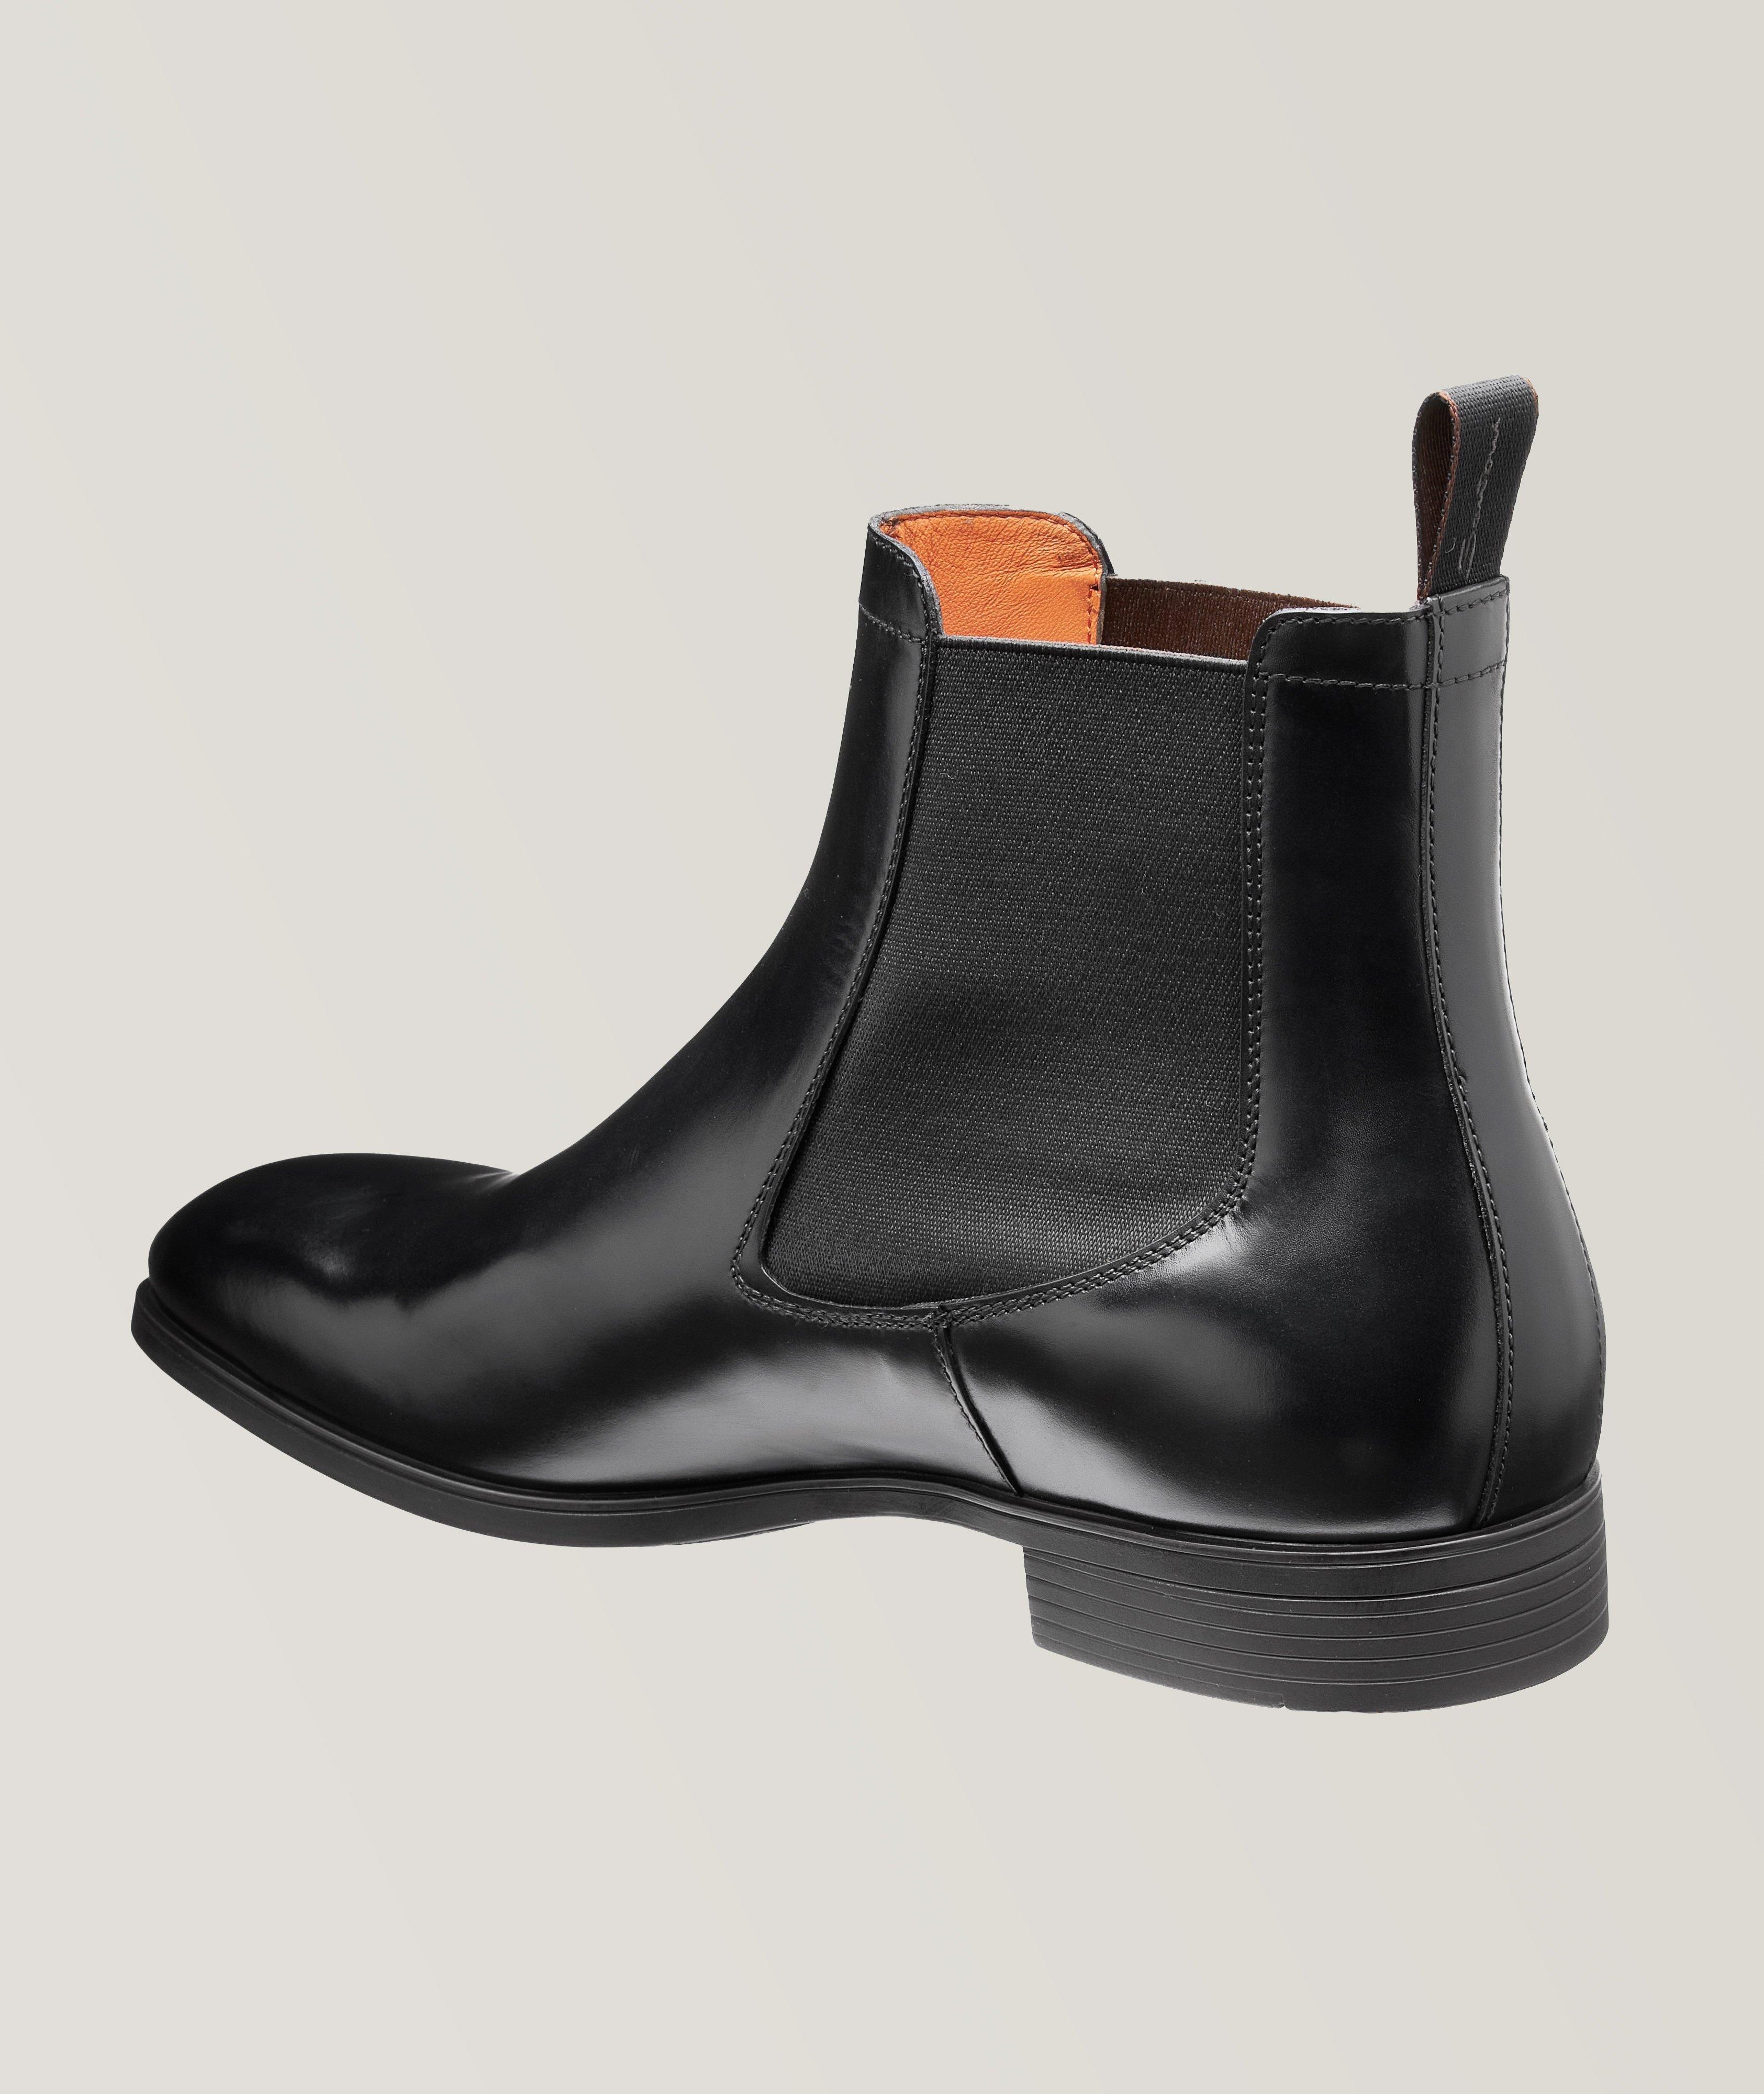 Nat ujævnheder læder Santoni Polished Leather Chelsea Boots | Boots | Harry Rosen